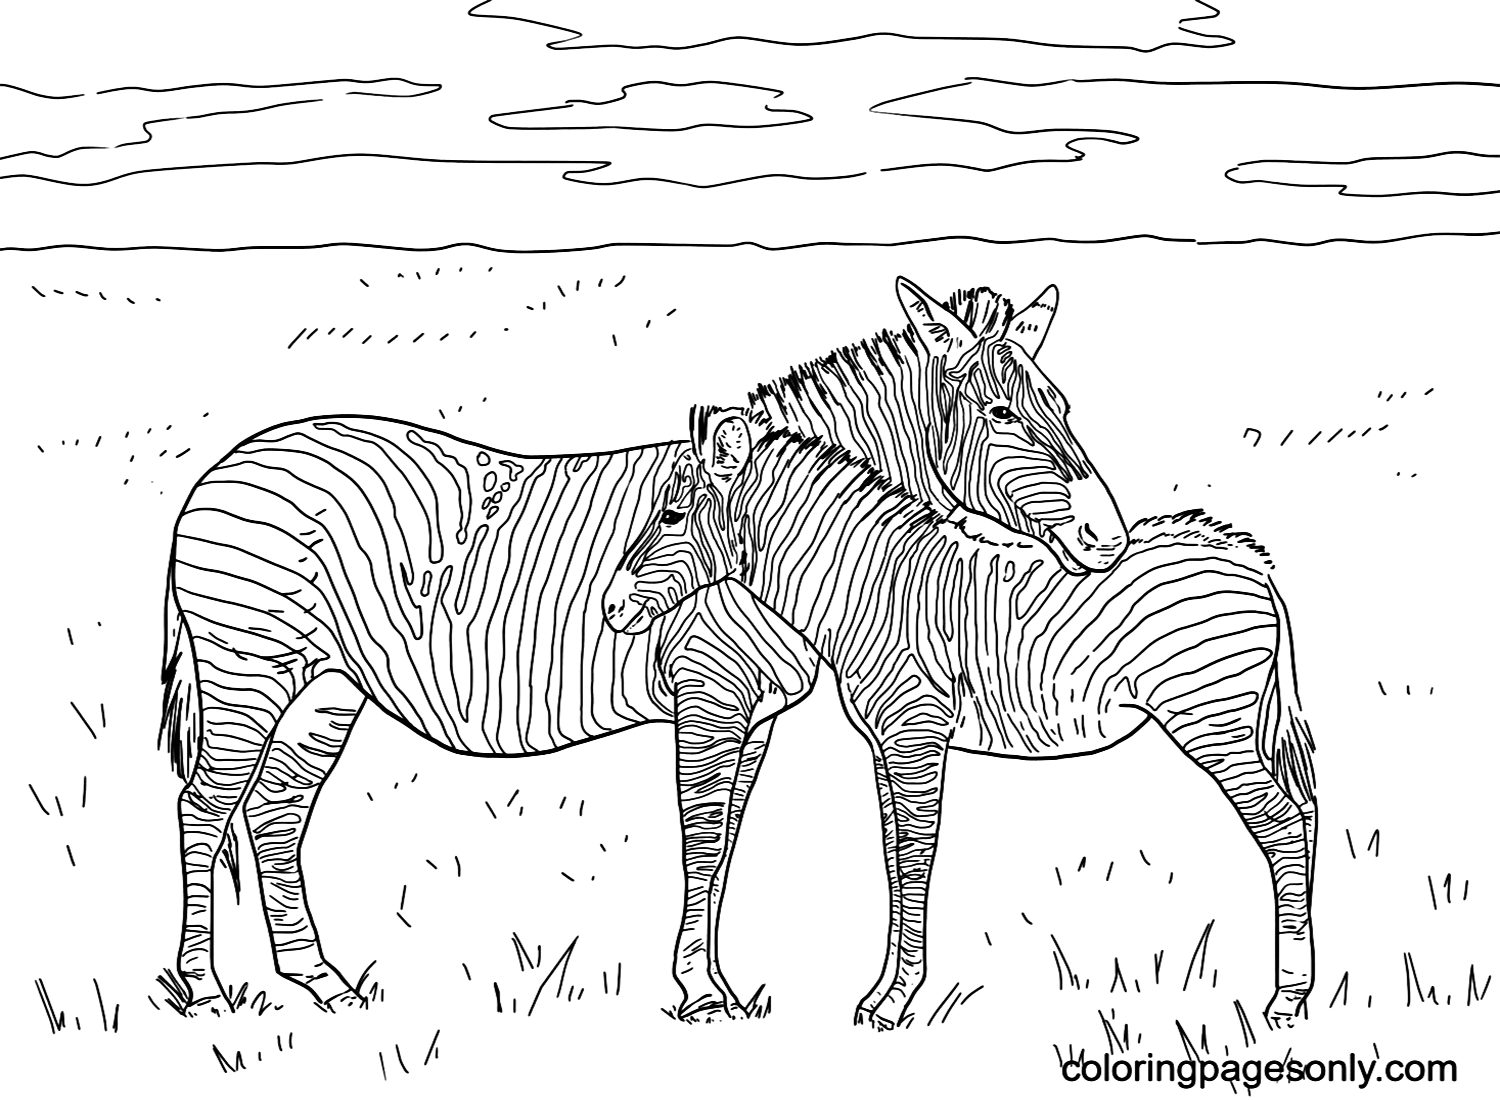 Grant’s Plain Zebras Coloring Pages